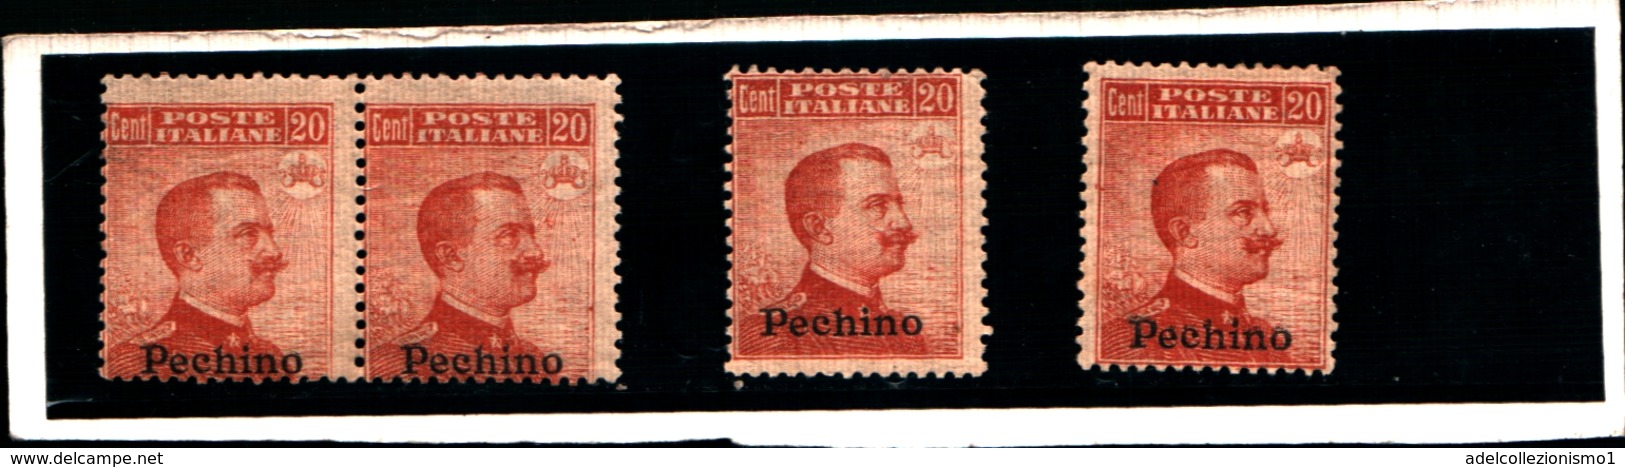 93537) ITALIA-25C. MICHETTI-SENZA FILIGRANA Soprast. Pechino - 1917 -MNH**-LA VENDITA E RIFERITA A 1 SOLO FRANCOBOLLO - Pekin